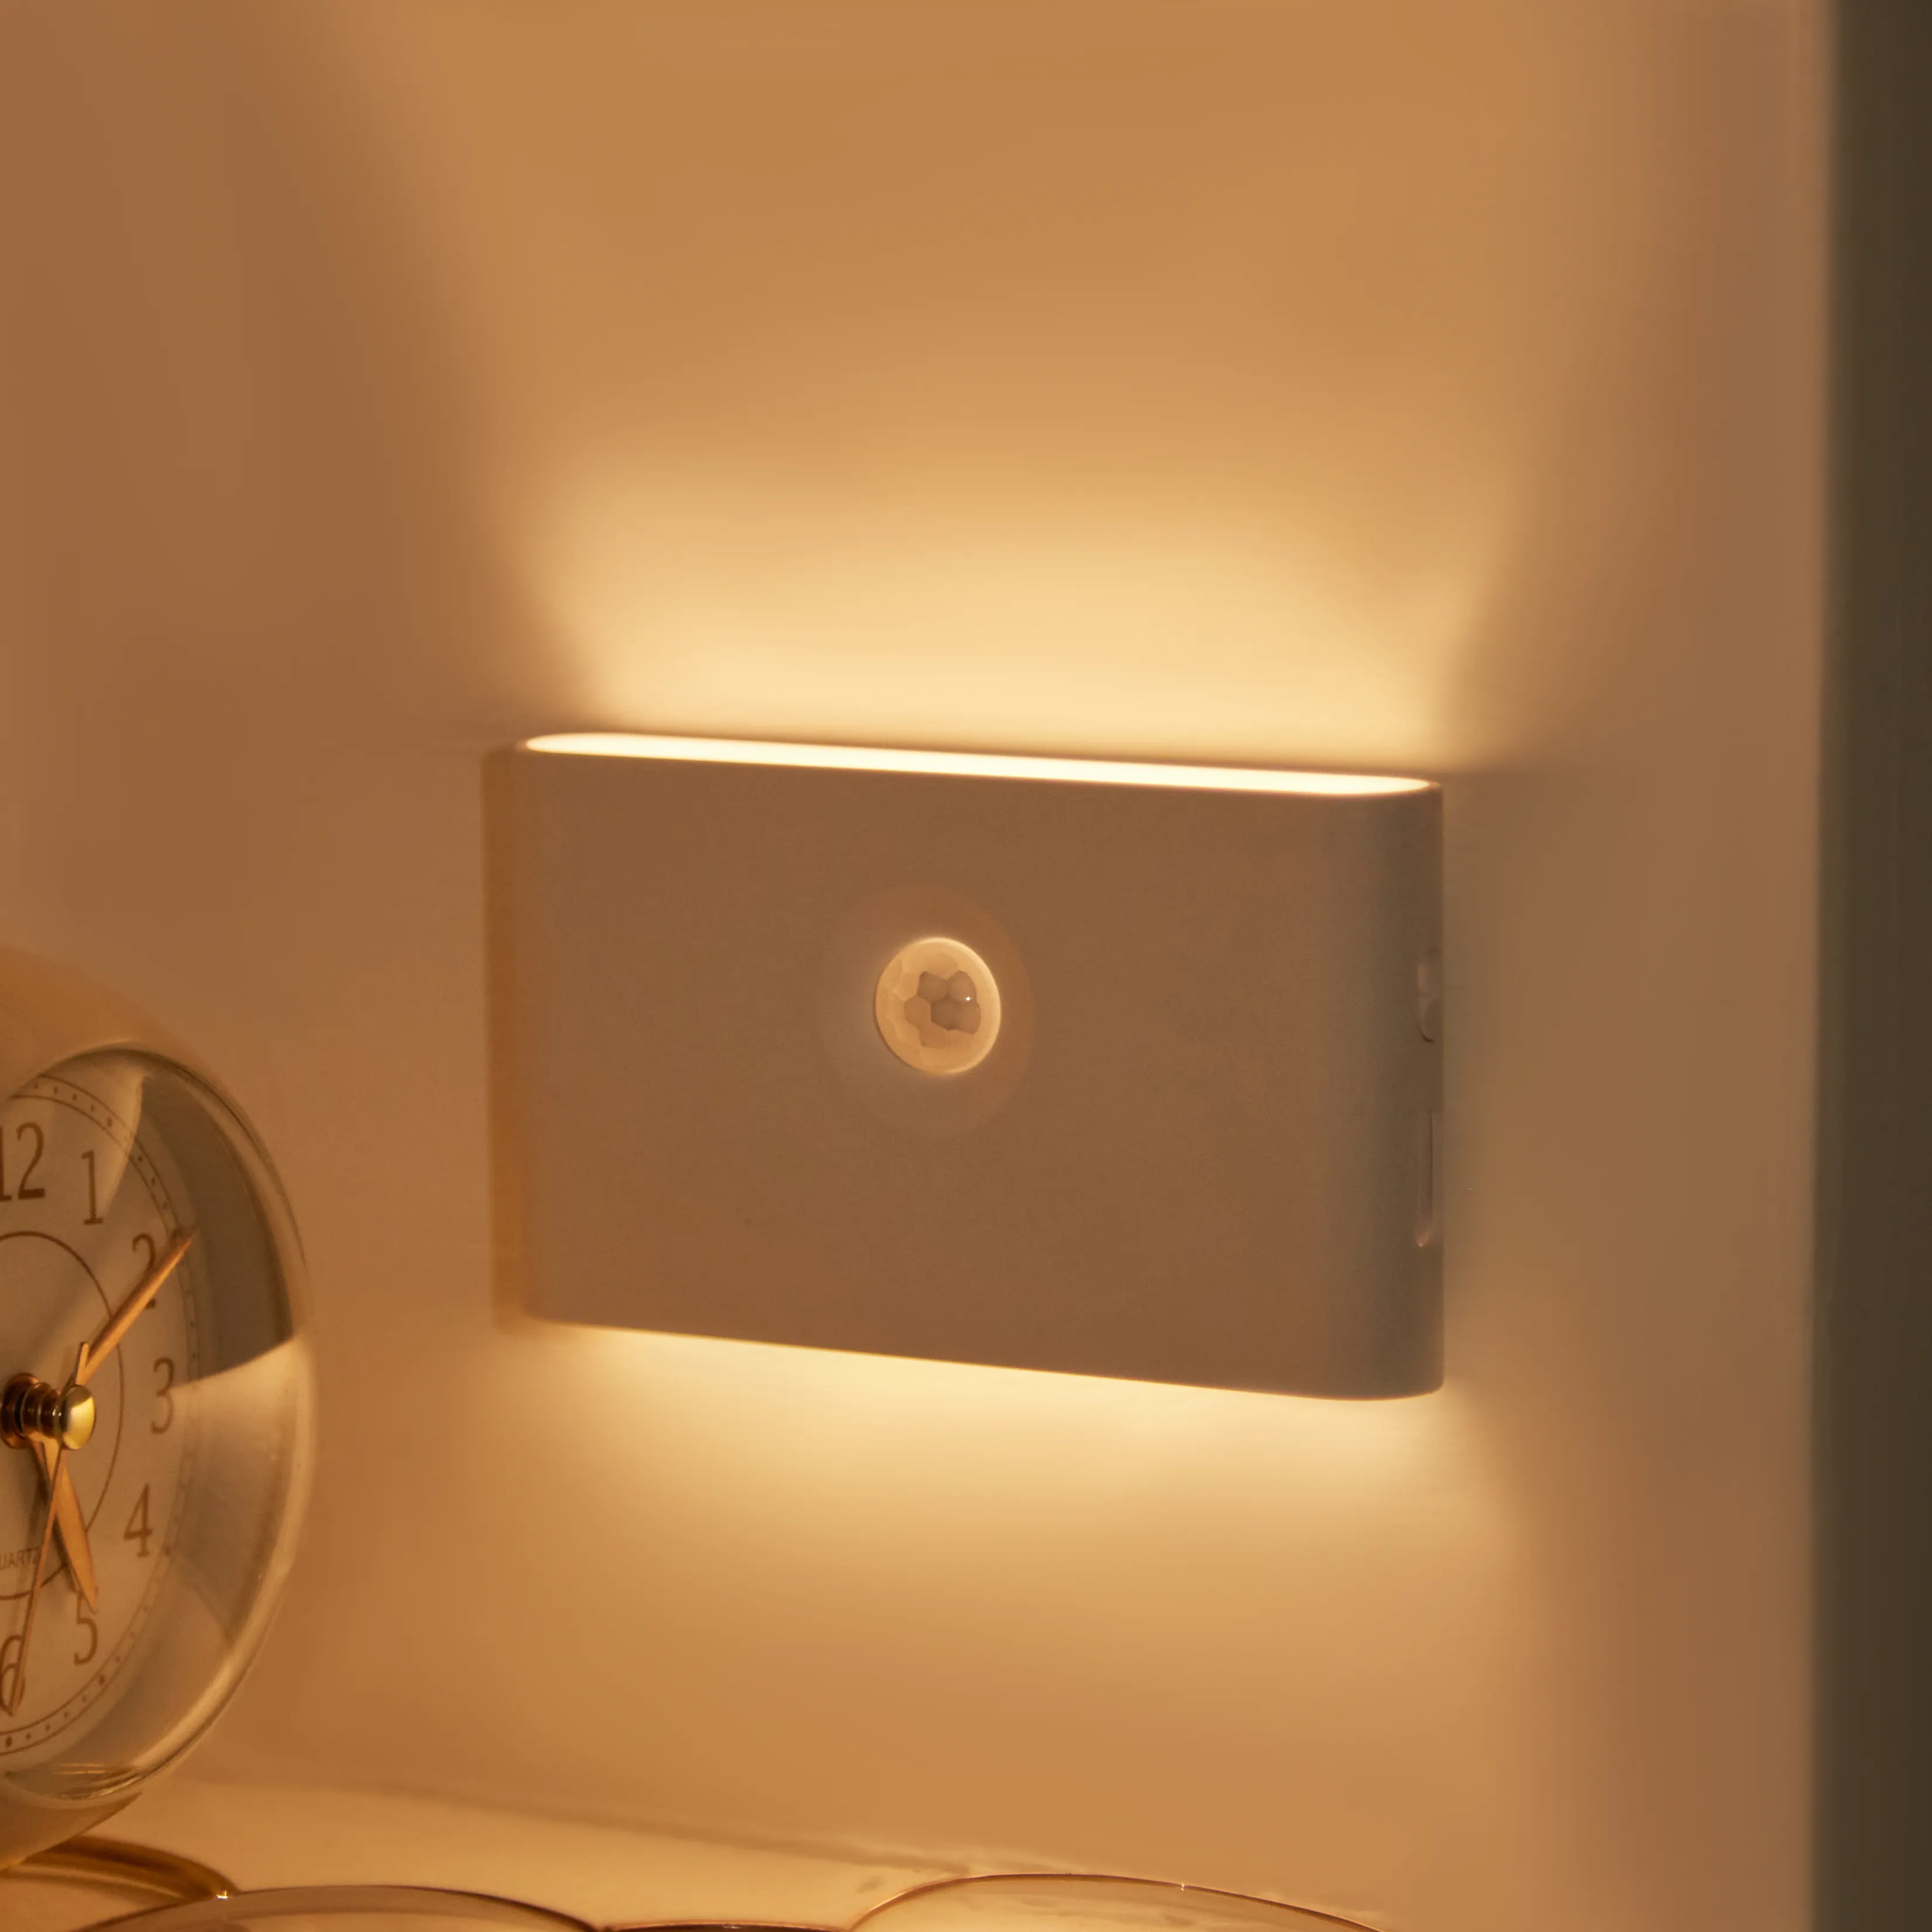 Muti-funzione Usb lampada da parete portatile intelligente sensore di movimento luce notturna a Led per i bambini e gli anziani si alzano nella notte